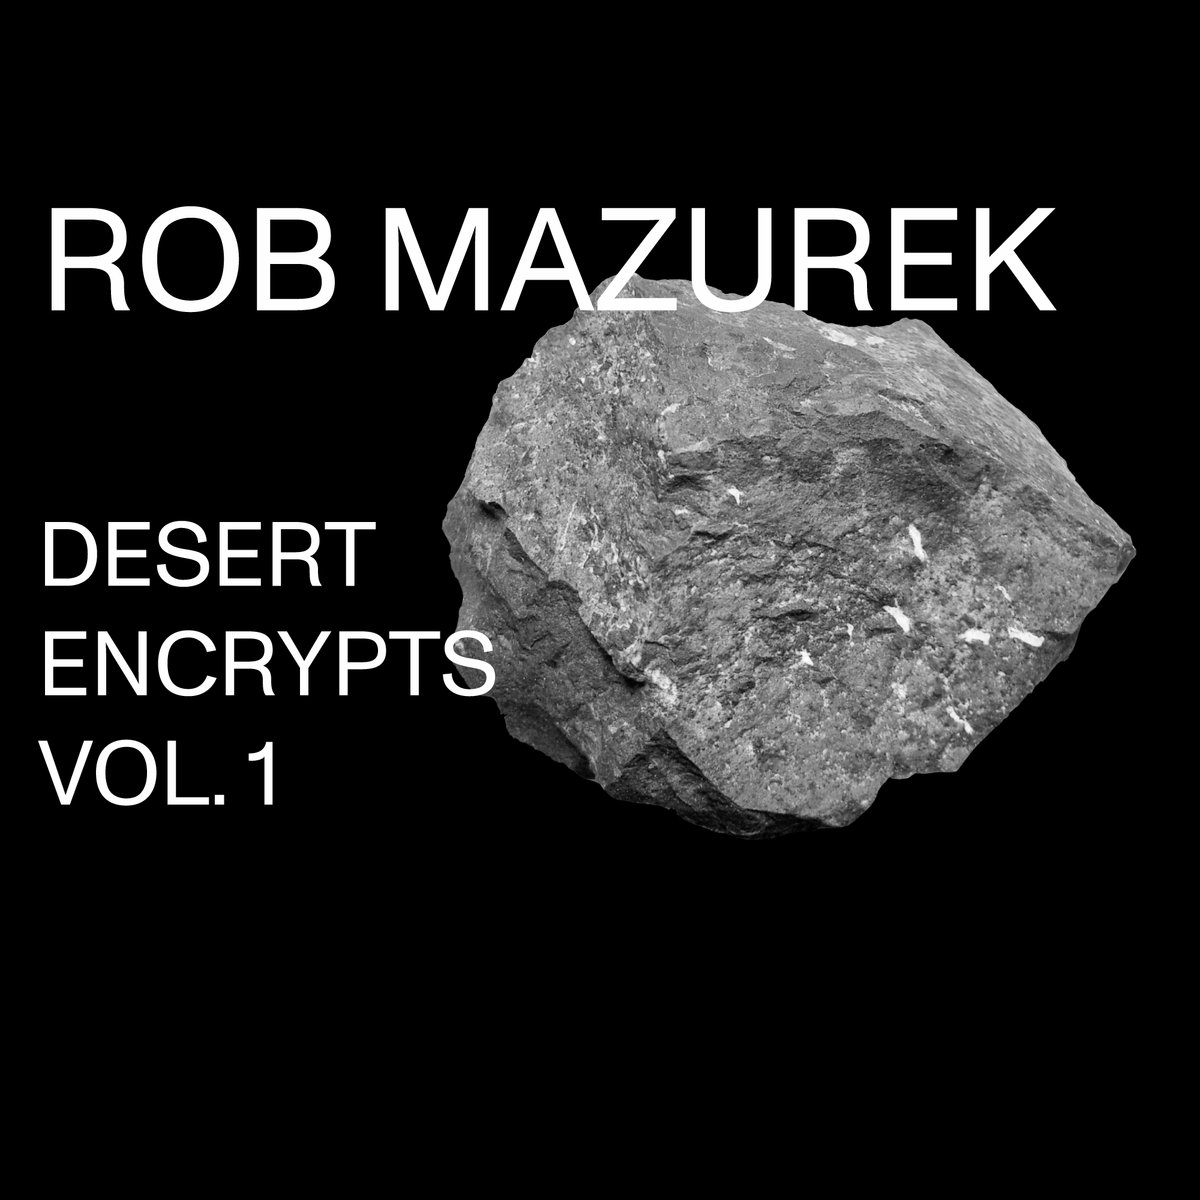 I miglior album jazz 2019 Top 20 dischi - Rob Mazurek